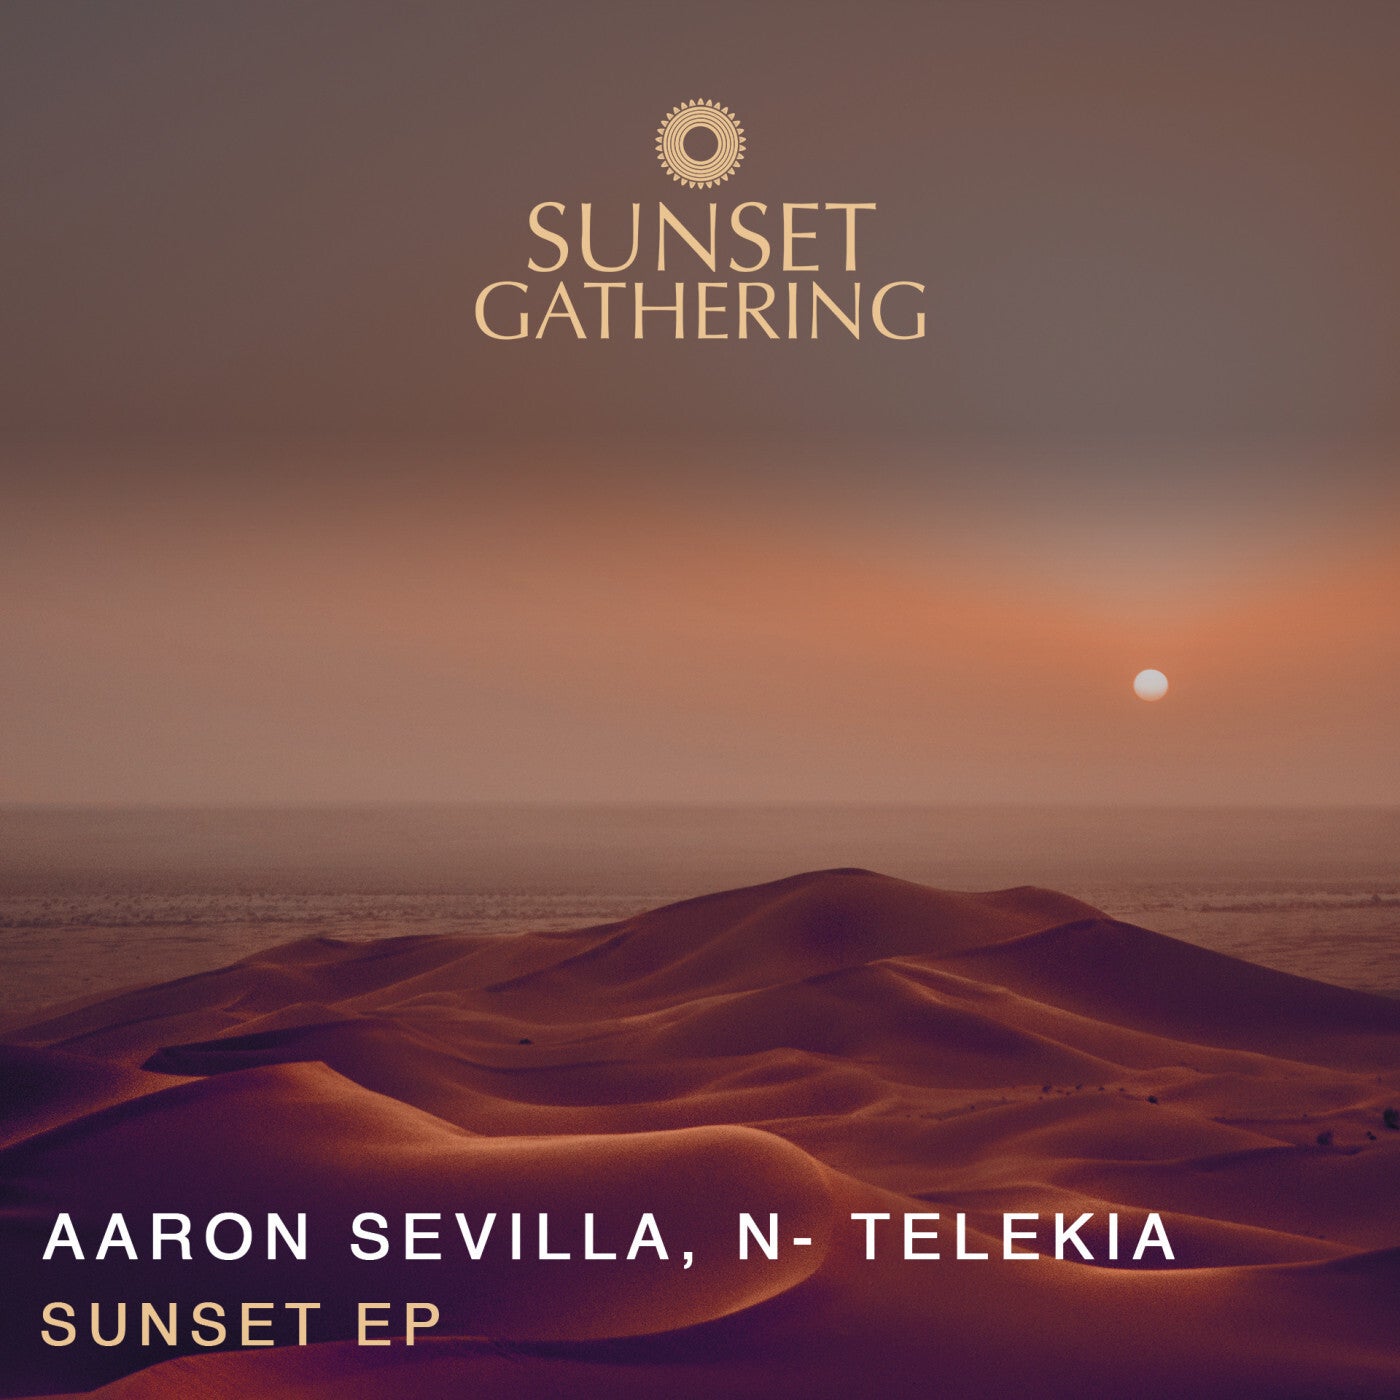 N-Telekia, Aaron Sevilla – Sunset EP [SG001]